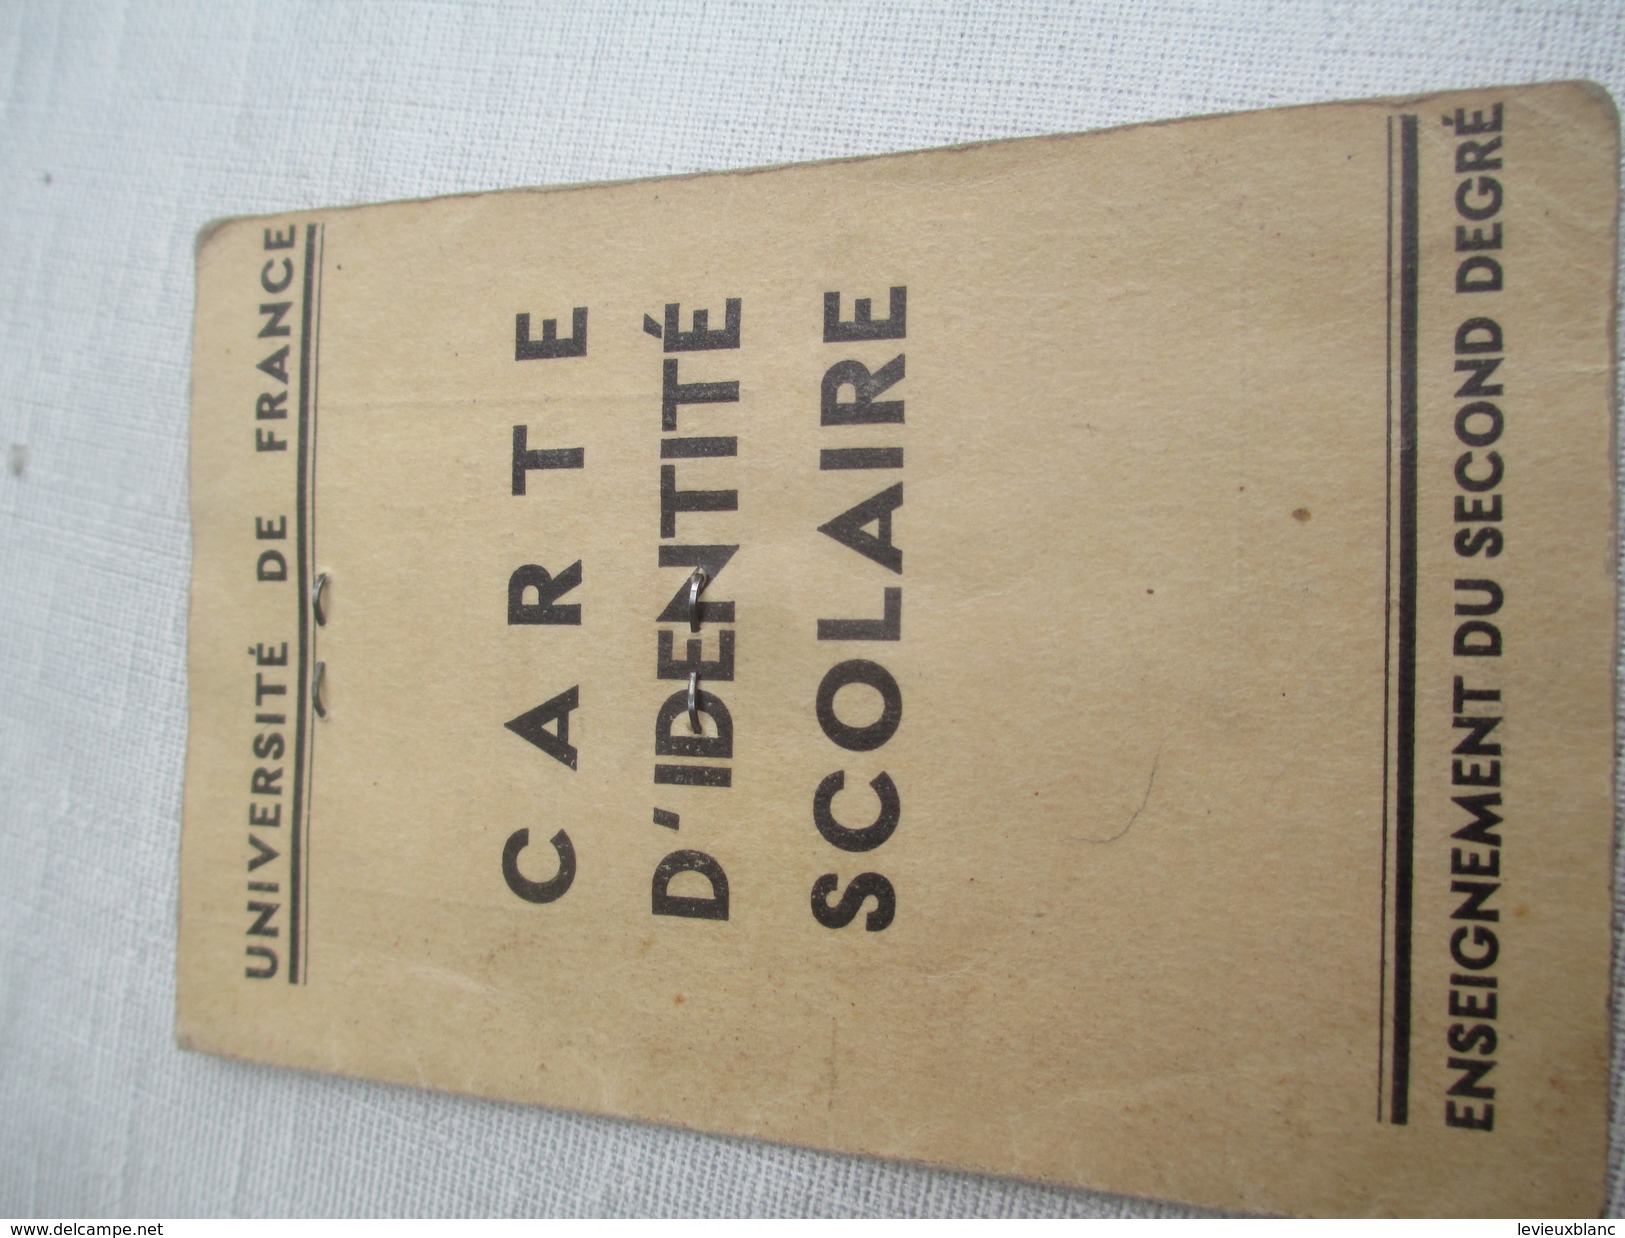 Carte D'identité Scolaire/Enseignement Du Second Degré/Institut Gay-Lussaqc/Paris/Lib. Gibert/ Université/ 1938    AEC78 - Non Classés